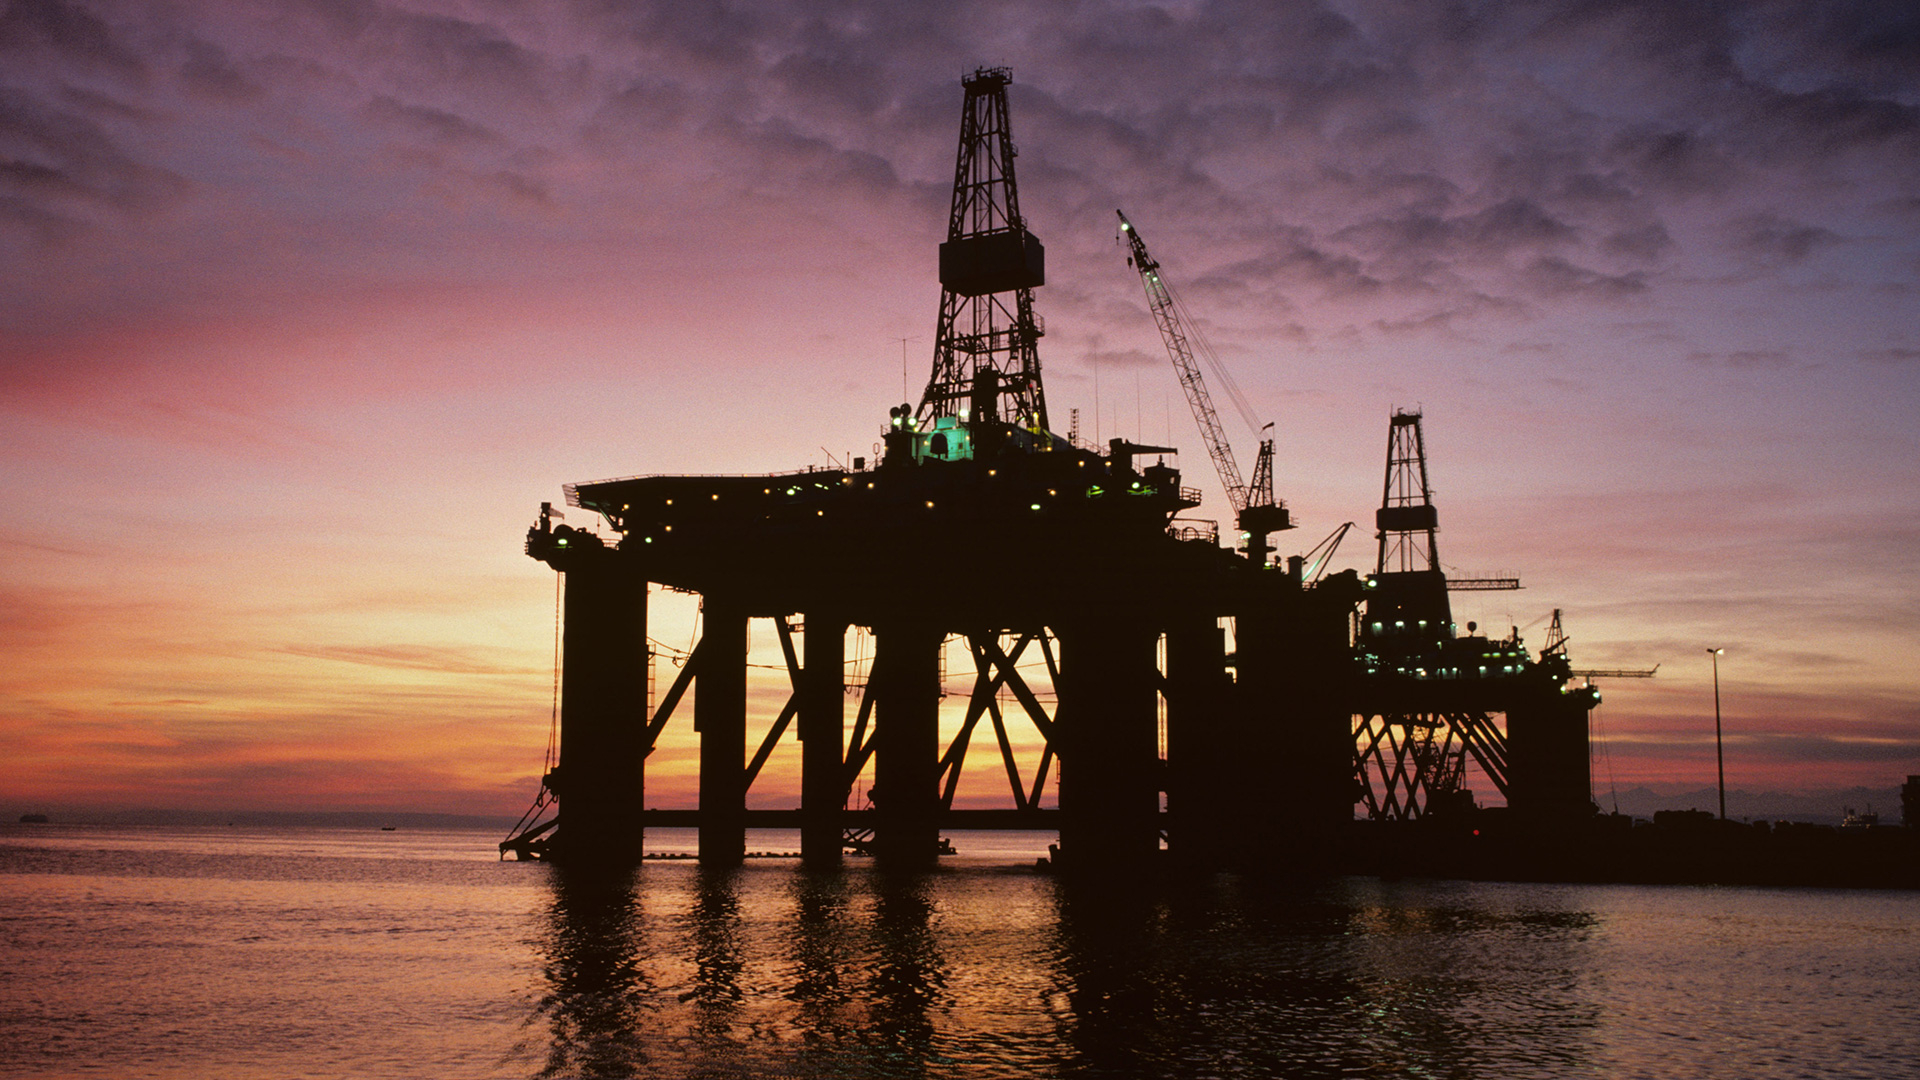 Oil derrick in ocean at sunset